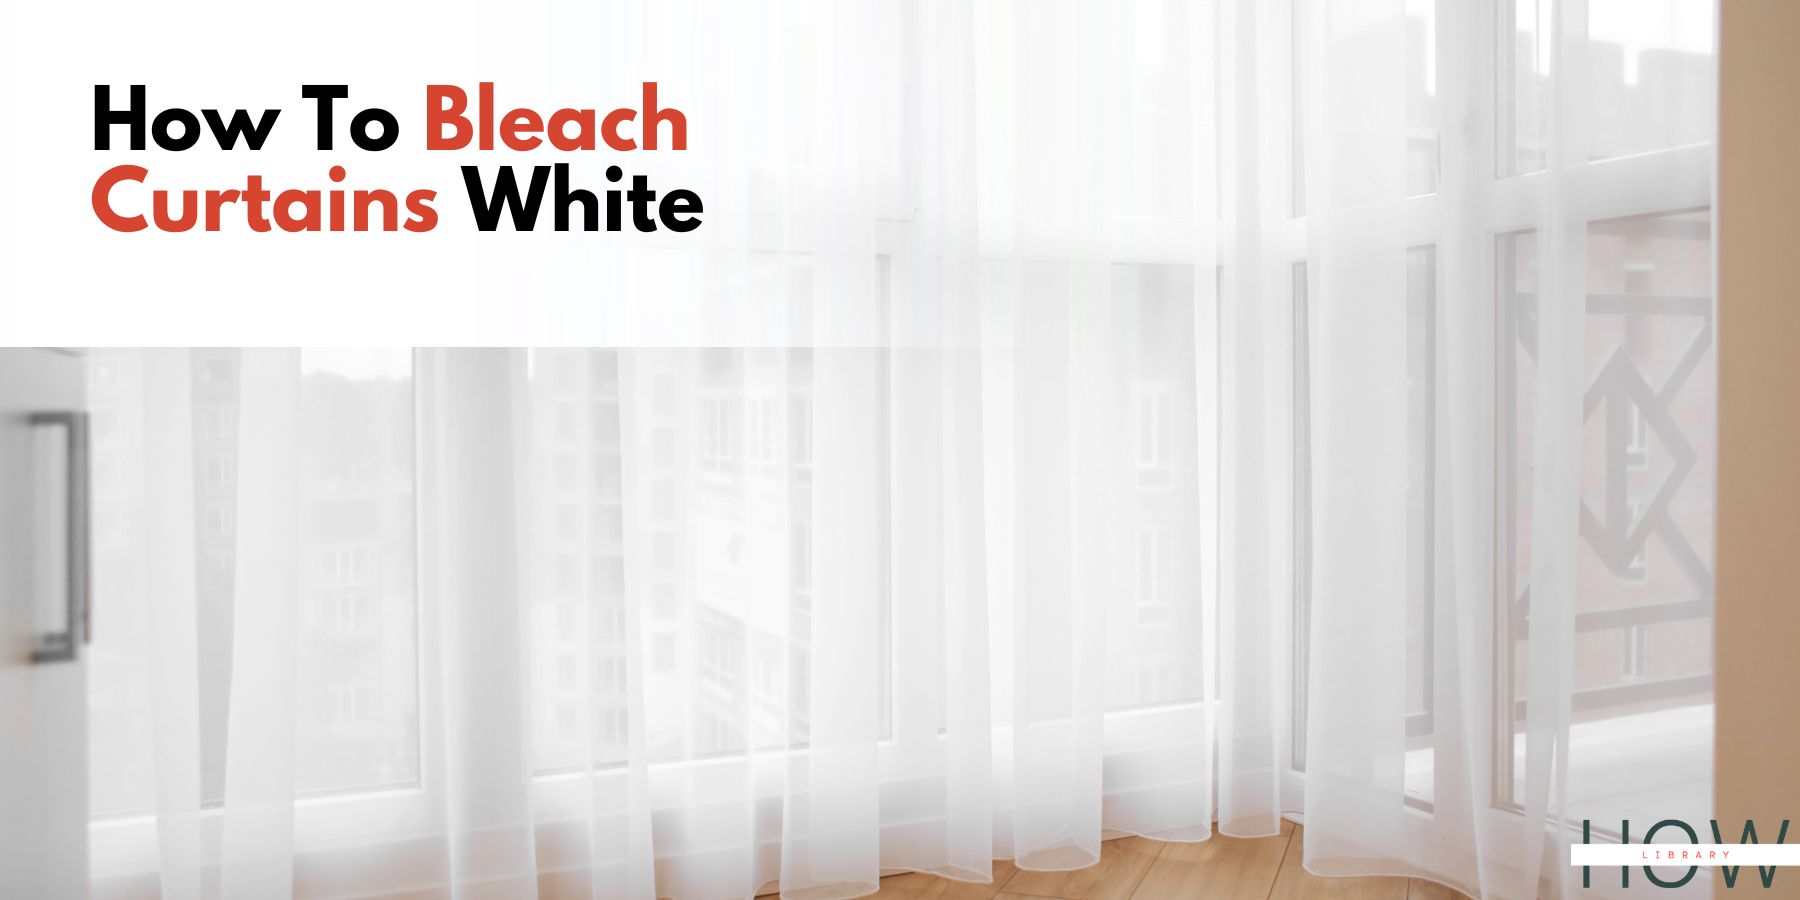 How To Bleach Curtains White